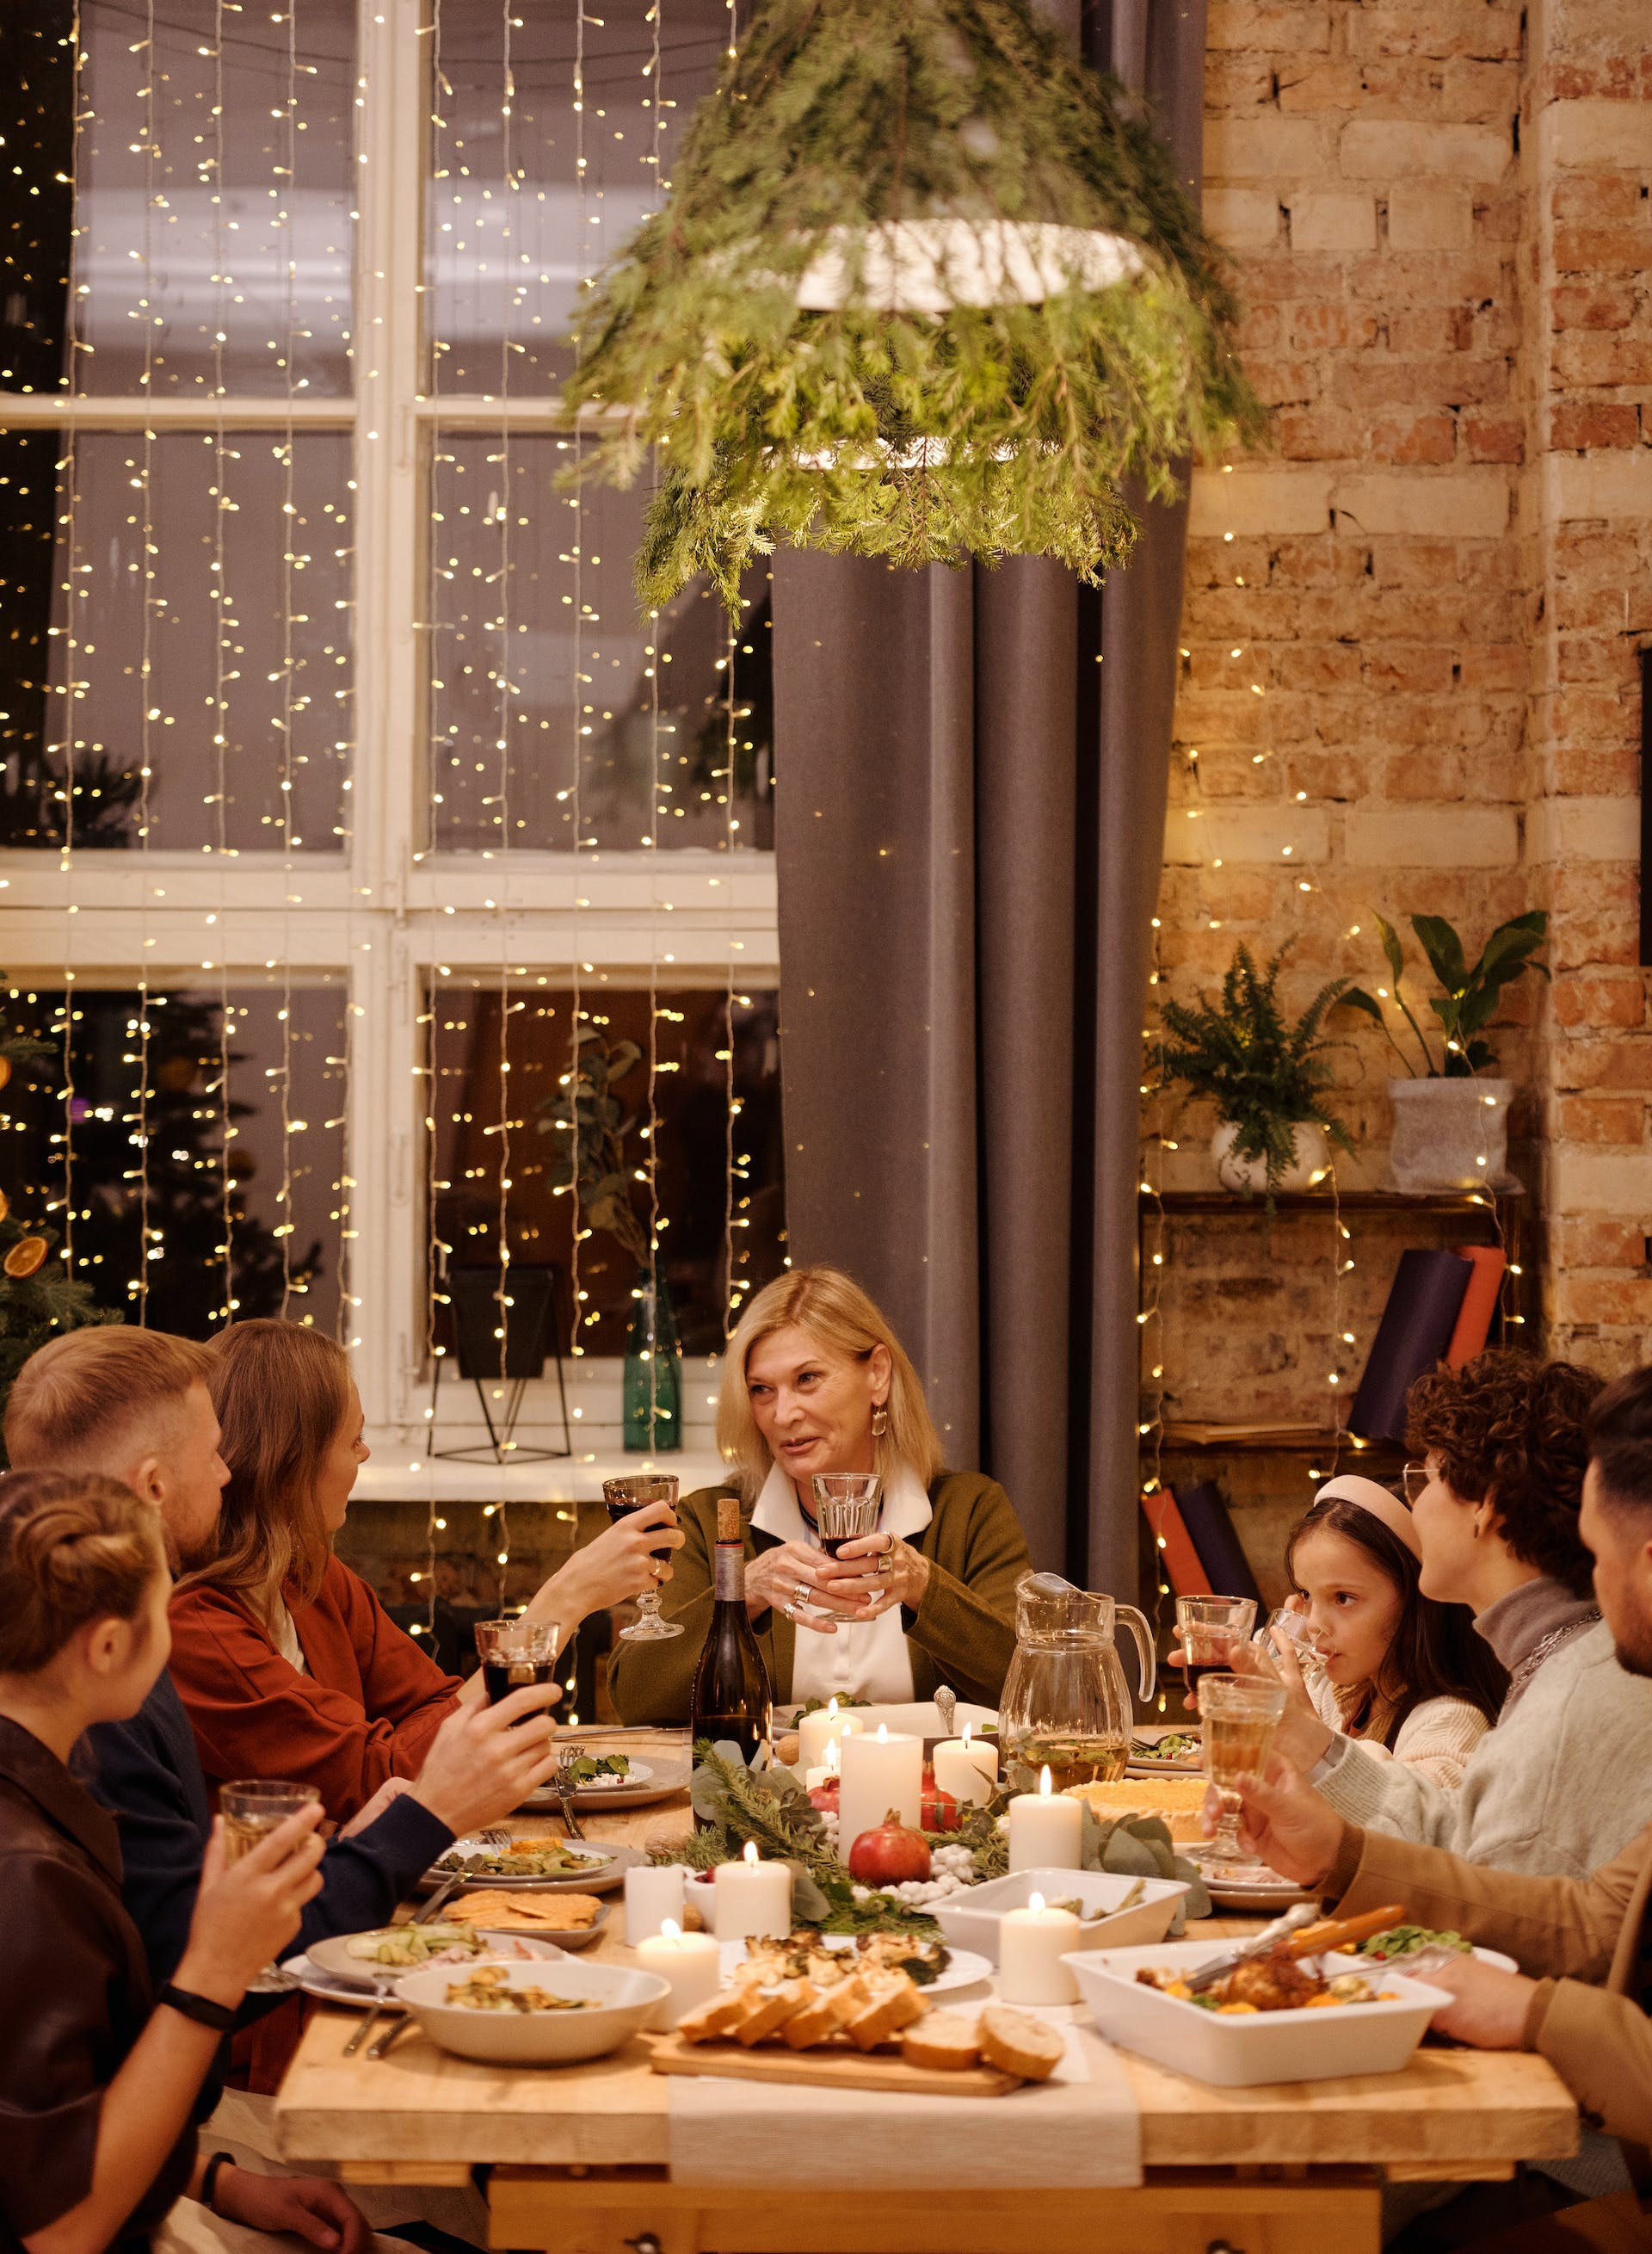 Les membres de la famille réunis pour le repas de Noël | Source : Pexels